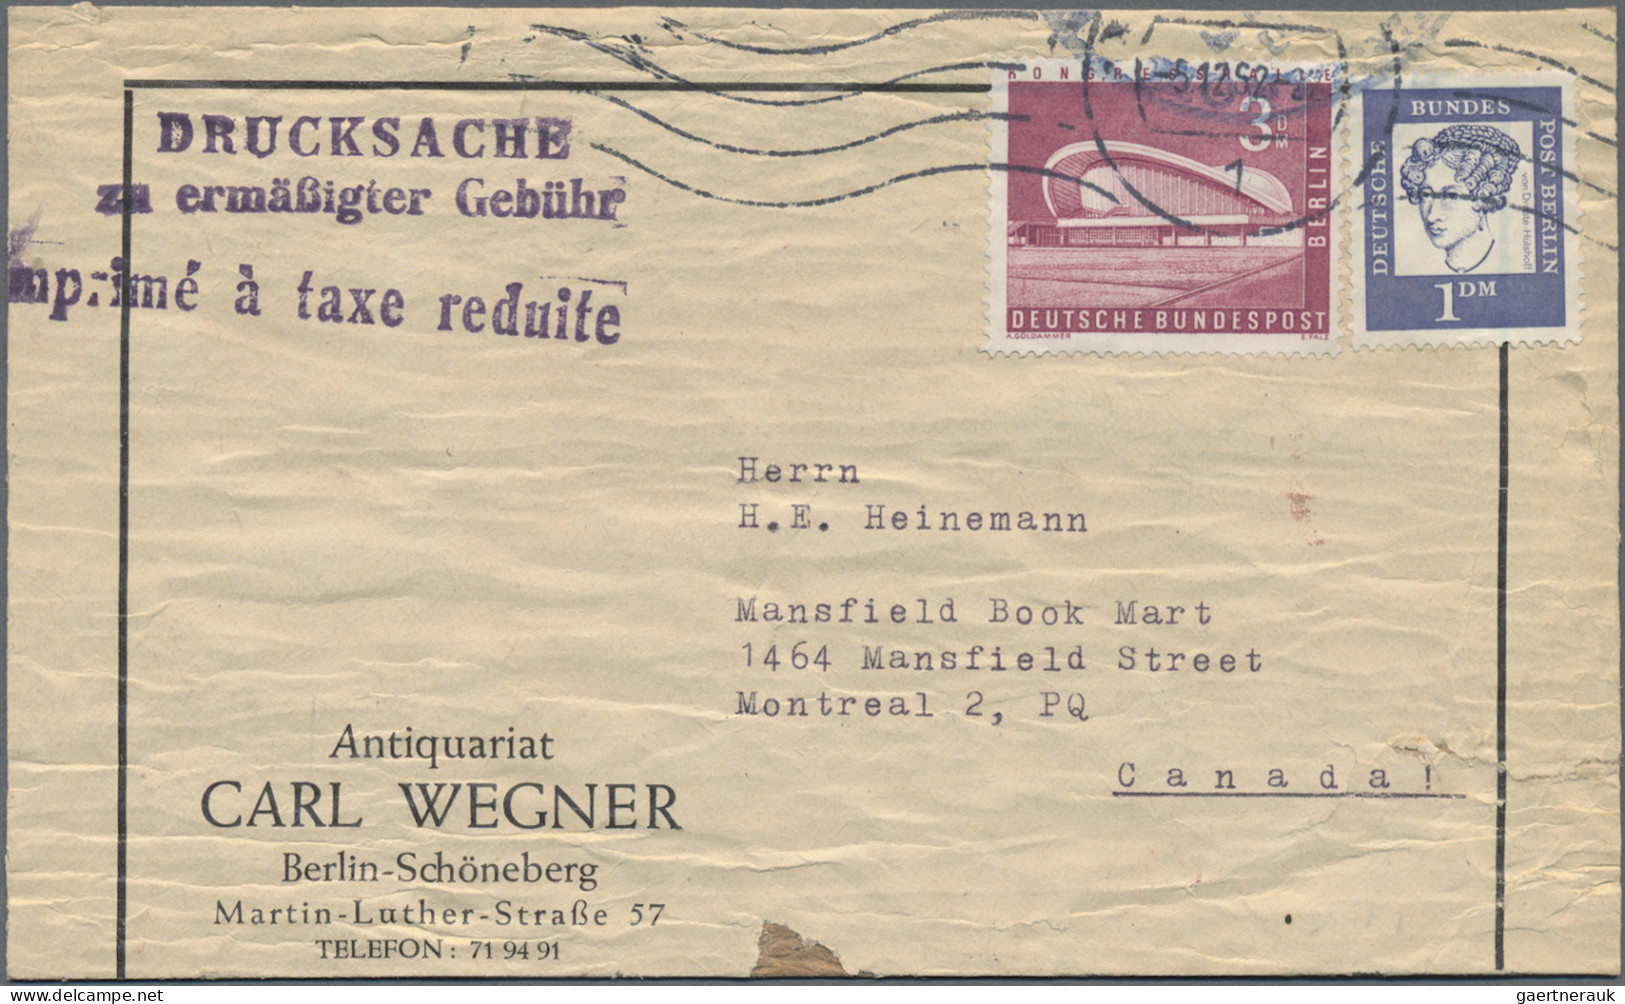 Berlin: 1962, 3 DM Kongresshalle In Seltener MiF Mit 1 DM Bedeutende Deutsche Au - Neufs